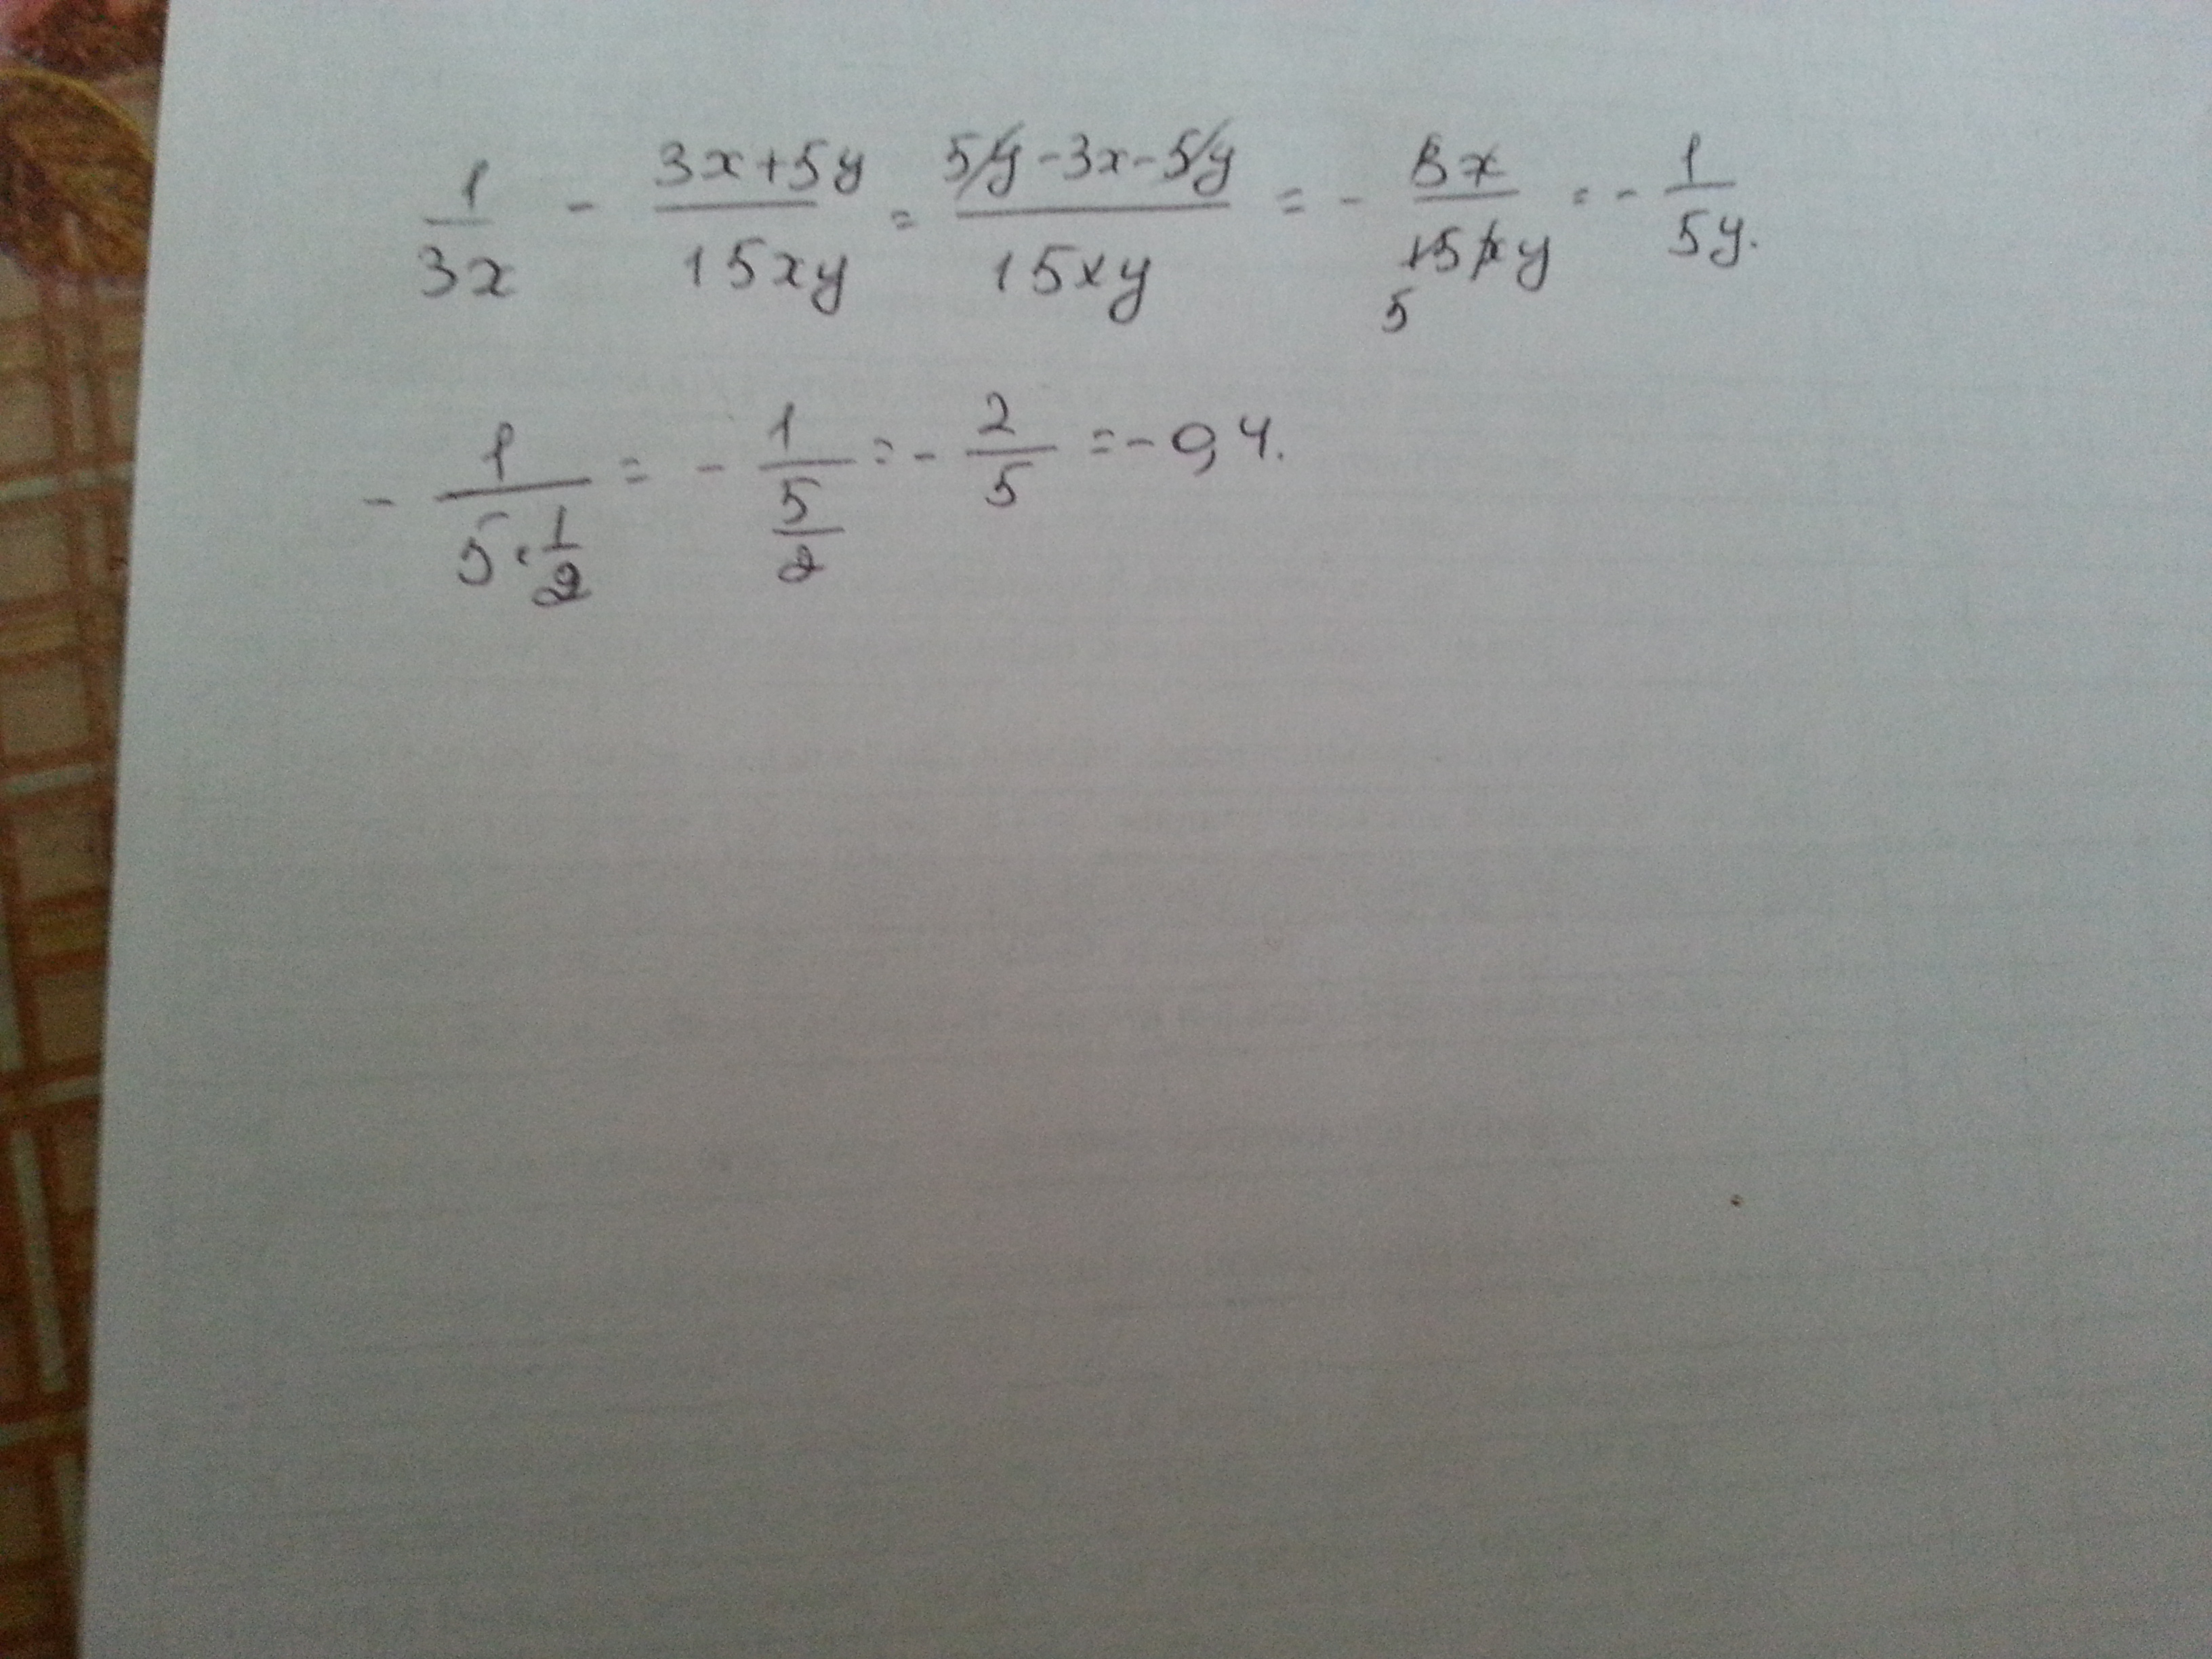 Y 5x 3 12x 3. 1/3x-3x+5y/15xy при x корень из 45 y 1/2. Найдите значение выражения | минус 4| плюс |1 минус 3x| при x=2,4.. 1/3x 3x+5y/15xy. 1 3 5 3 15x y x XY + − при x = 45 , 12 y = ..